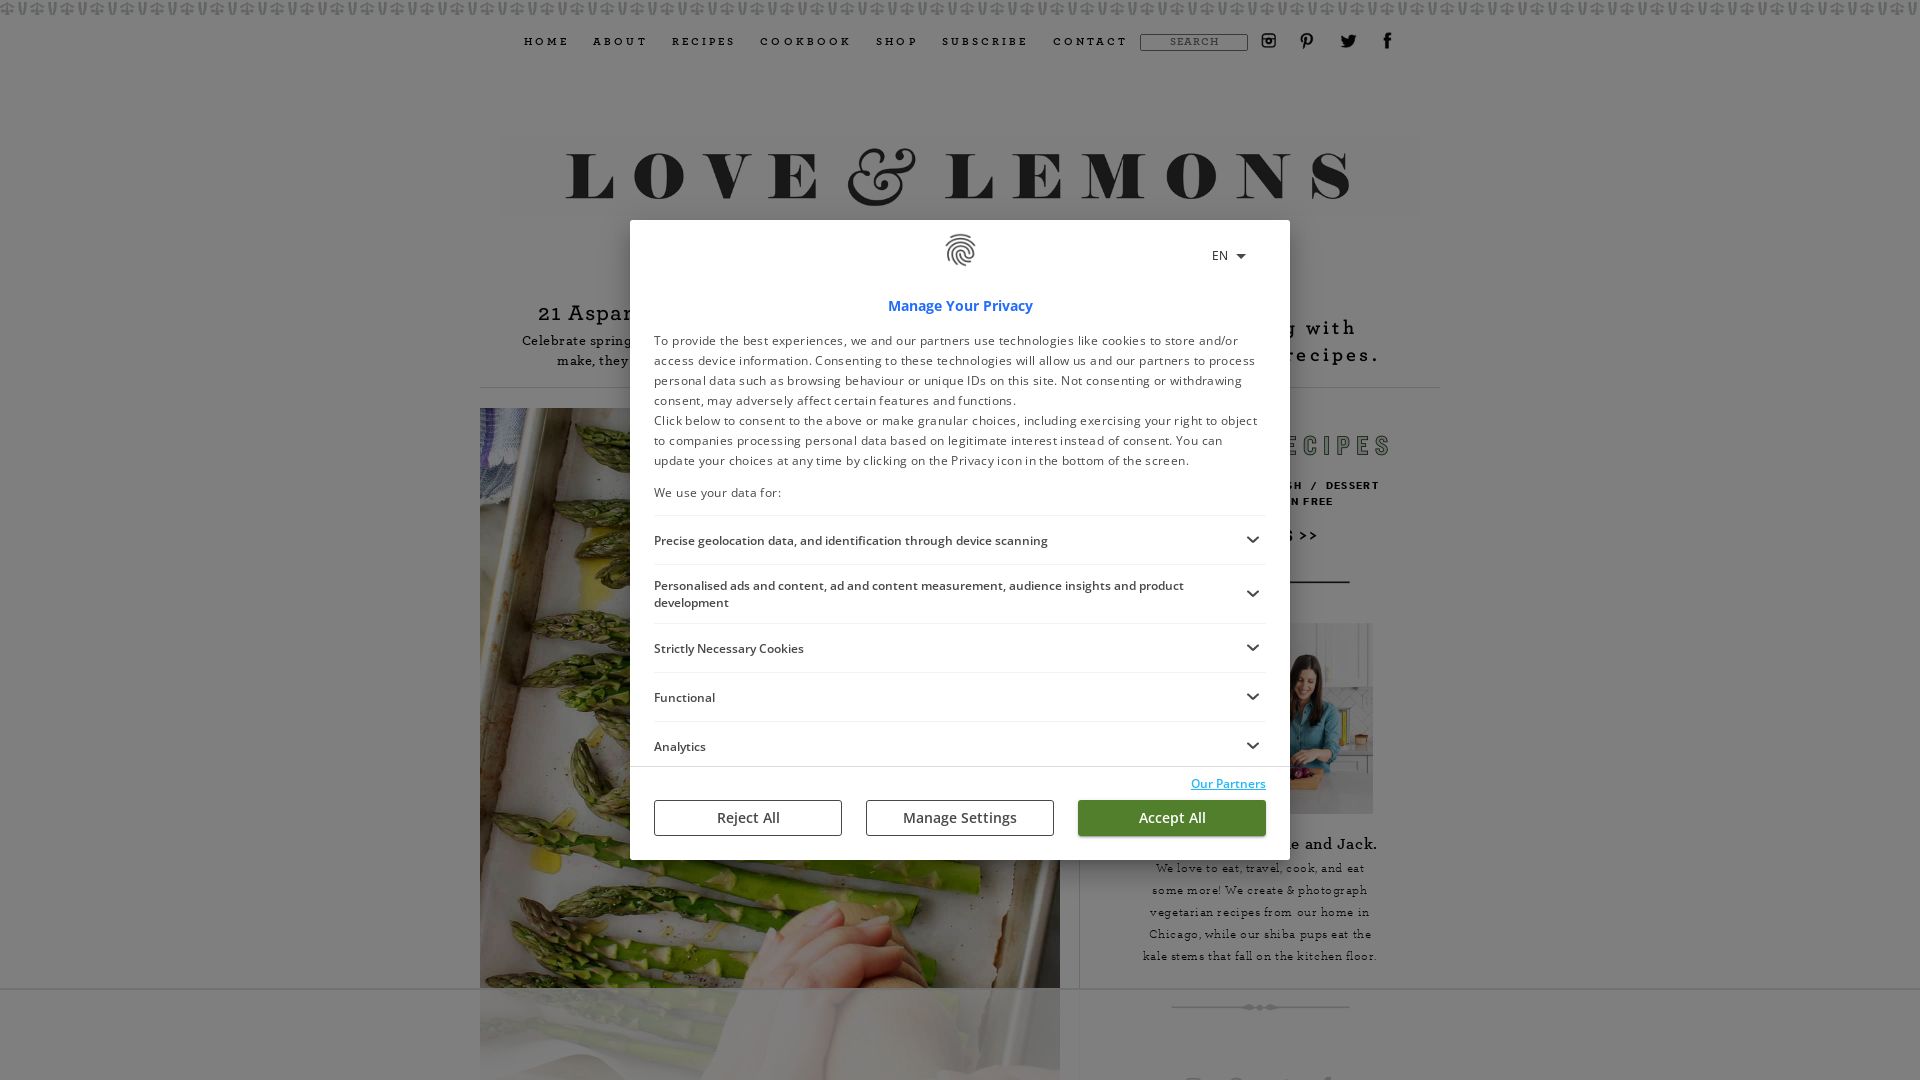 网站状态 loveandlemons.com 是  在线的